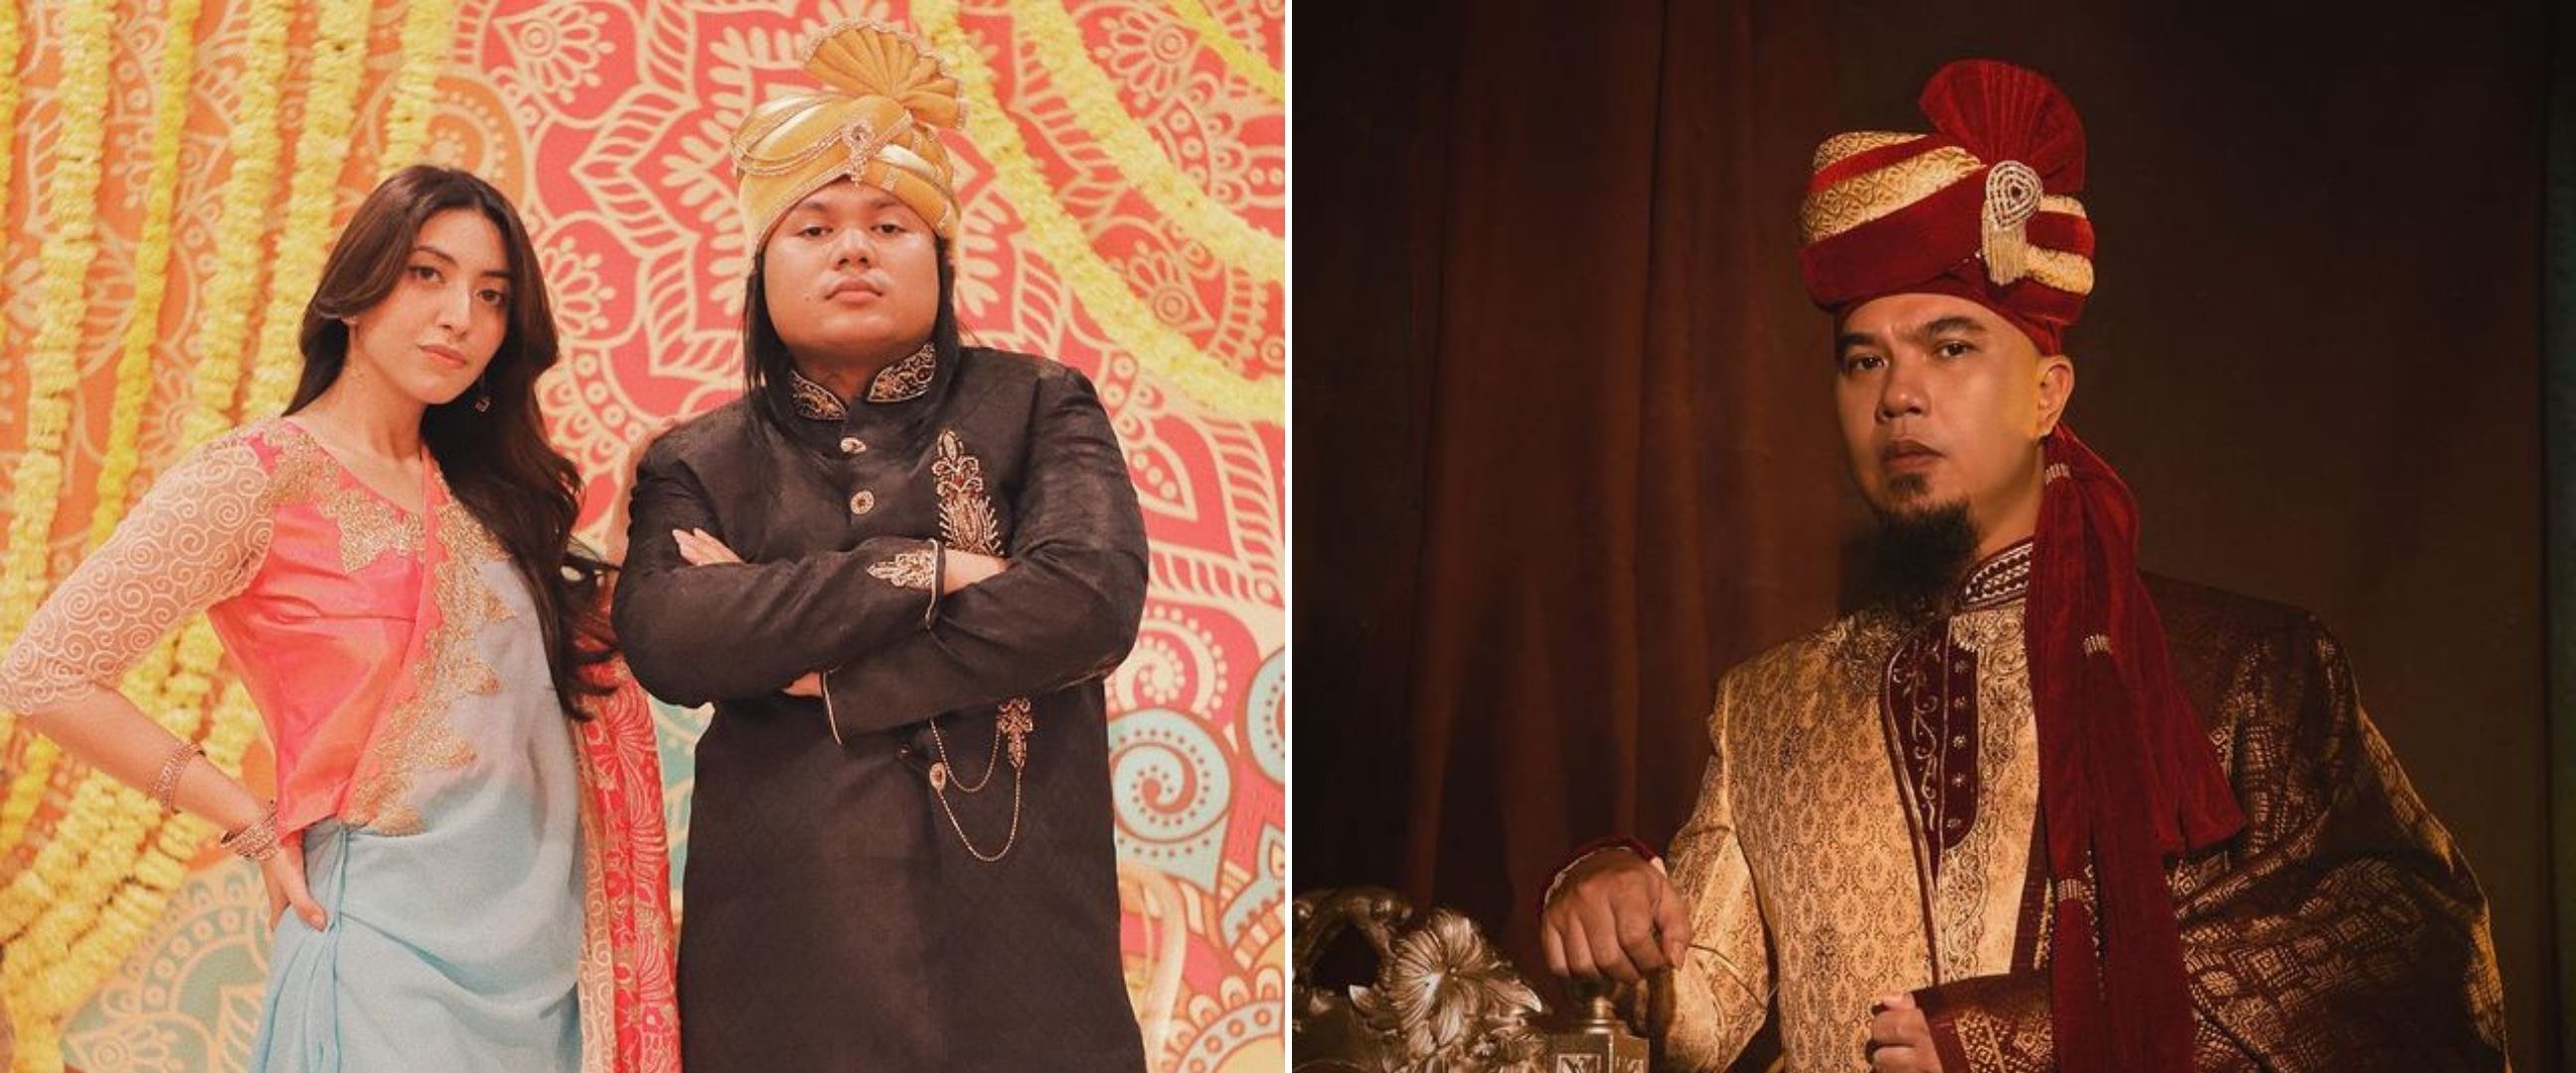 Potret 9 seleb cowok pakai busana khas India, bak artis Bollywood